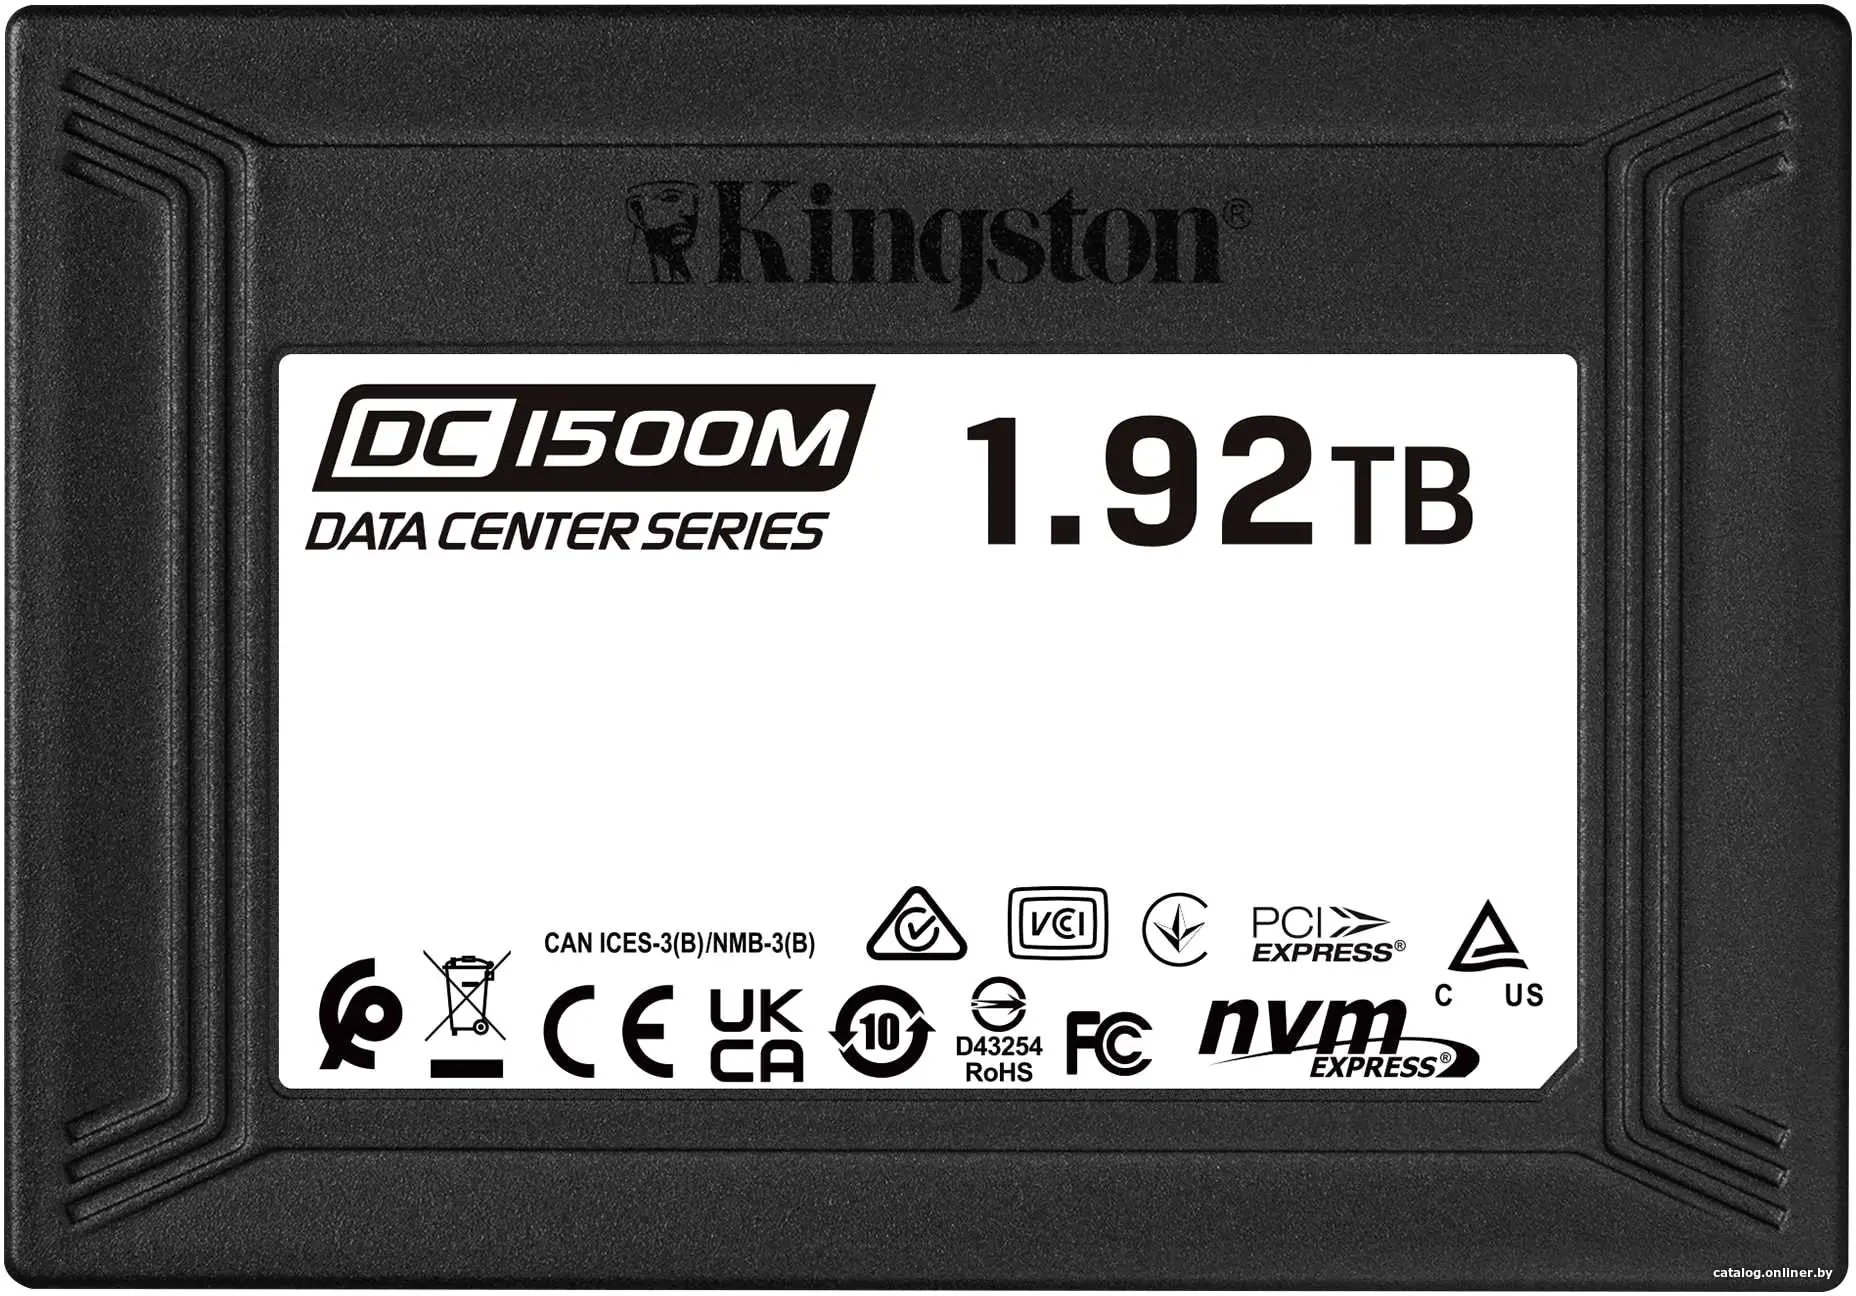 Купить Kingston Enterprise SSD 1,92TB DC1500M U.2 PCIe NVMe SSD (R3300/W2700MB/s) 1DWPD (Data Center SSD for Enterprise), цена, опт и розница